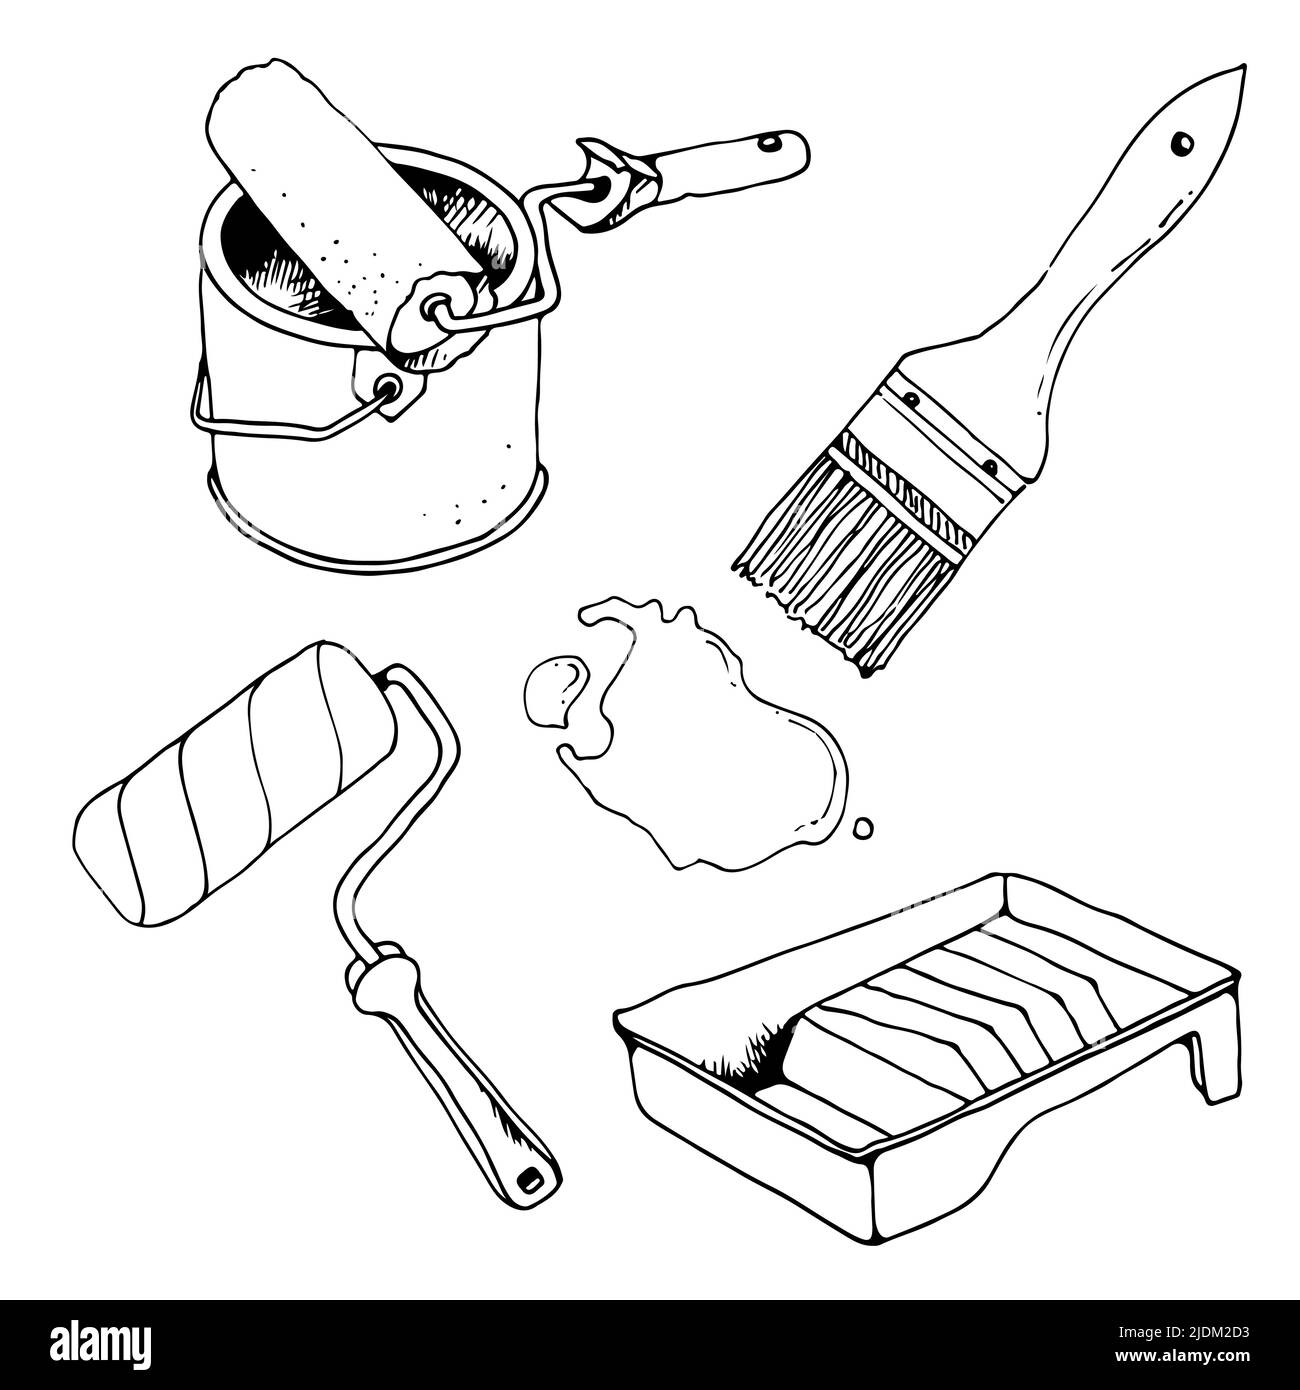 Reparaturwerkzeuge, Malwerkzeuge, Vektor-handgezeichnetes Illustrationsset, isoliert auf weißem Hintergrund Stock Vektor